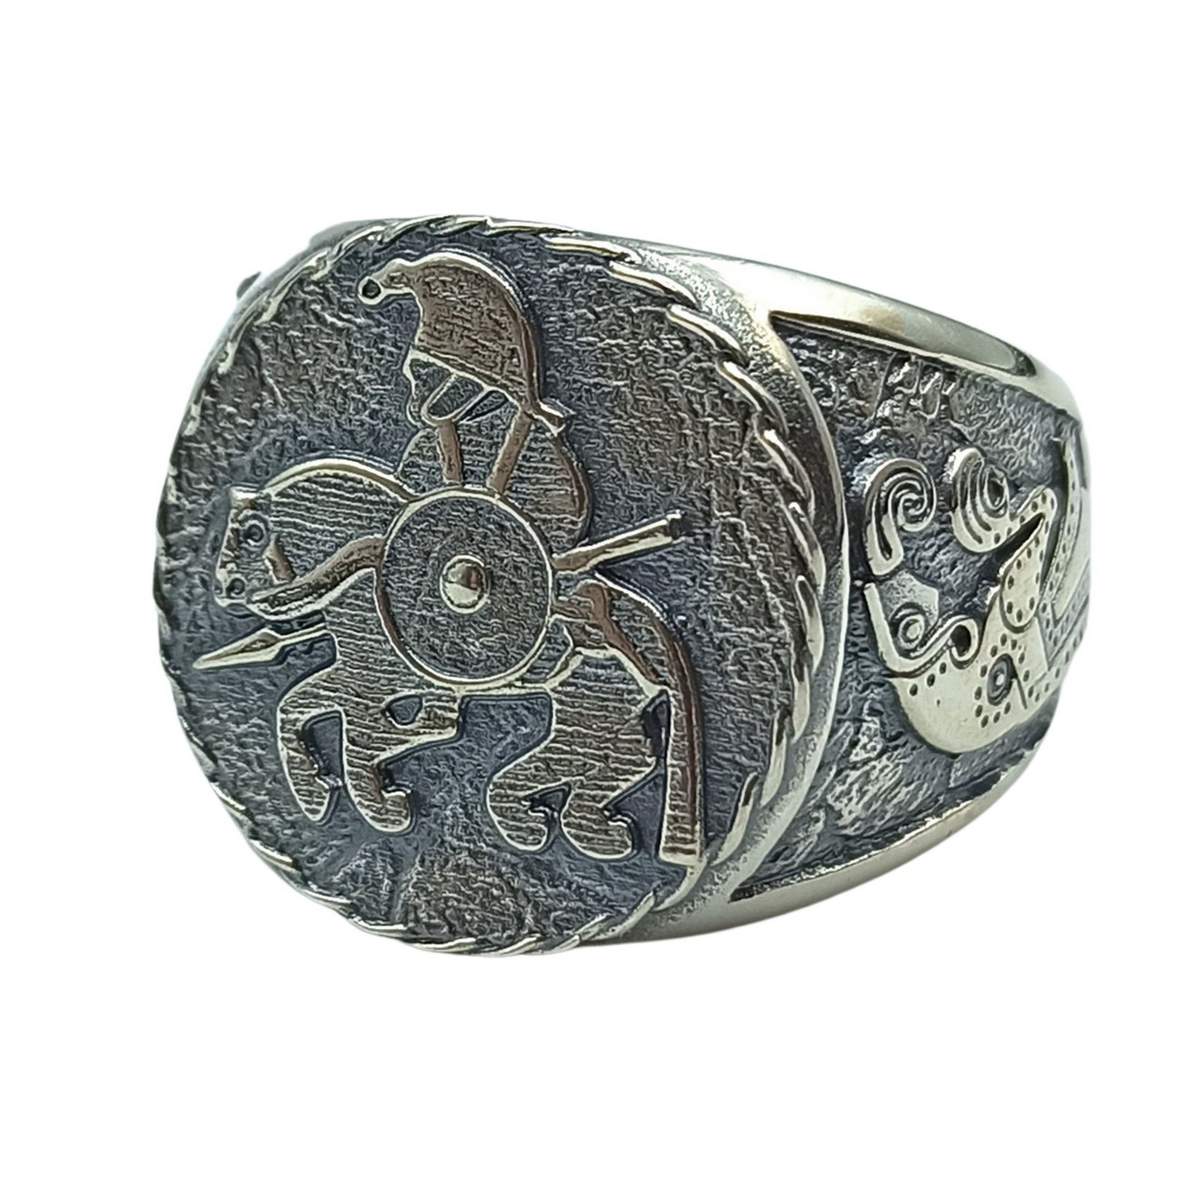 Horseman from Vendel silver signet ring